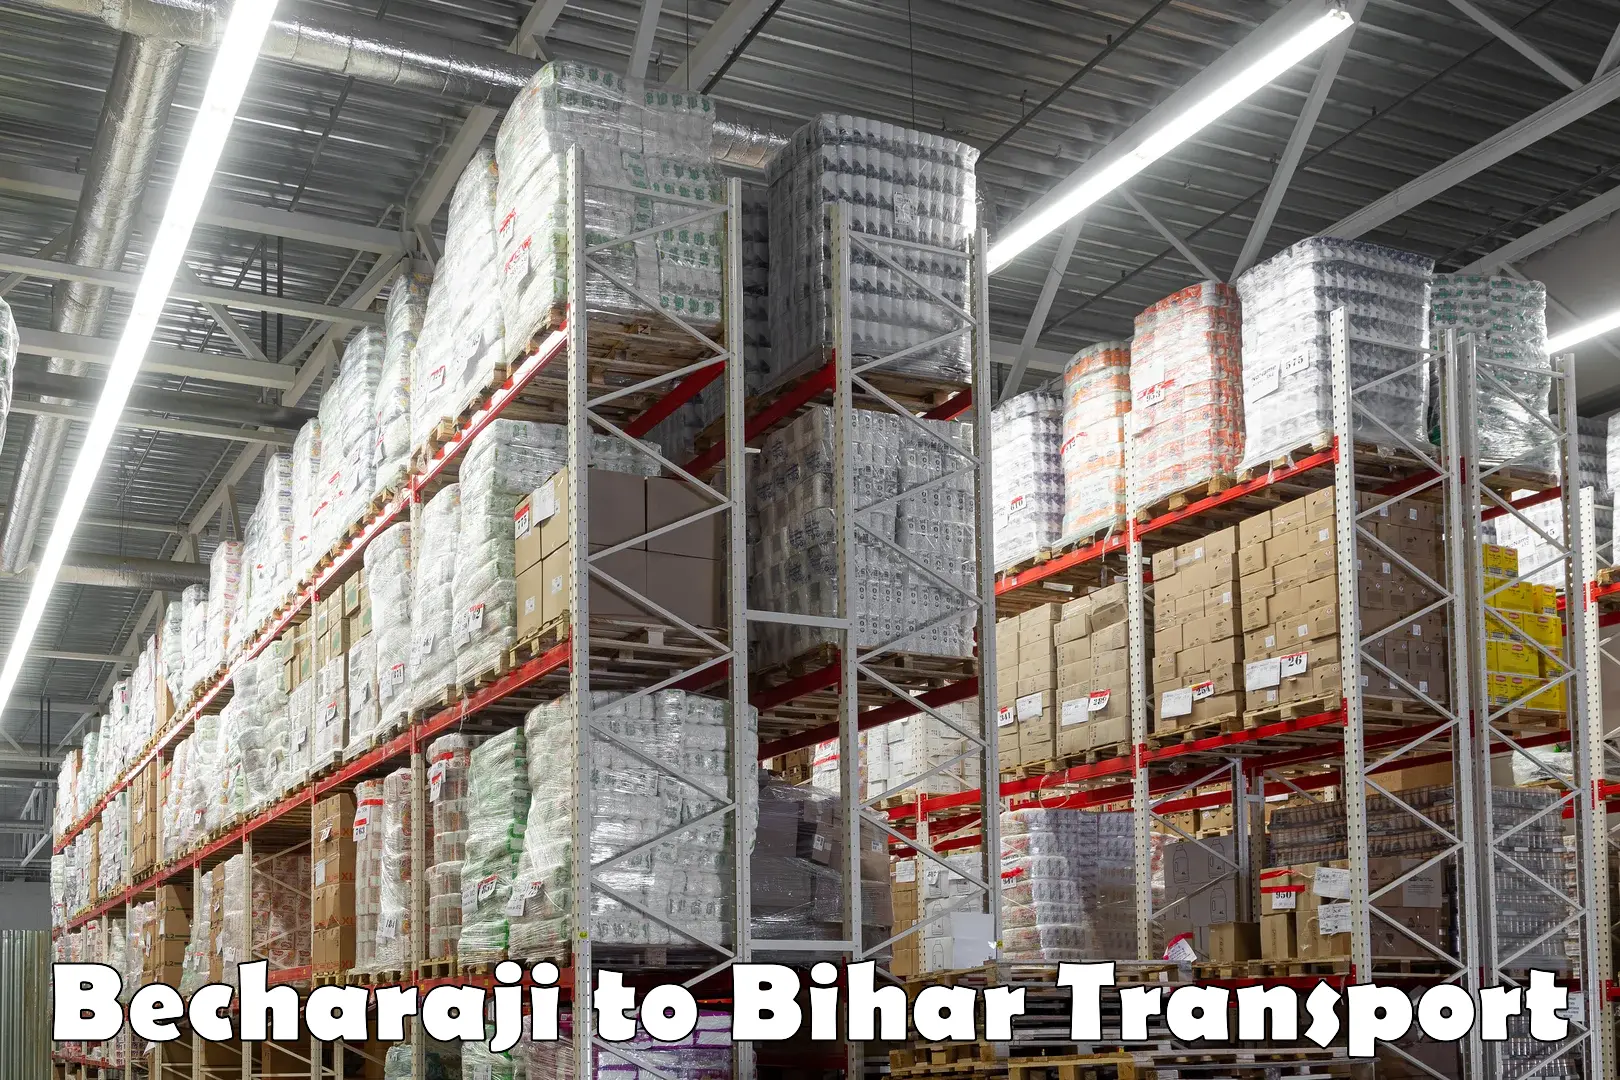 Commercial transport service Becharaji to Bihar